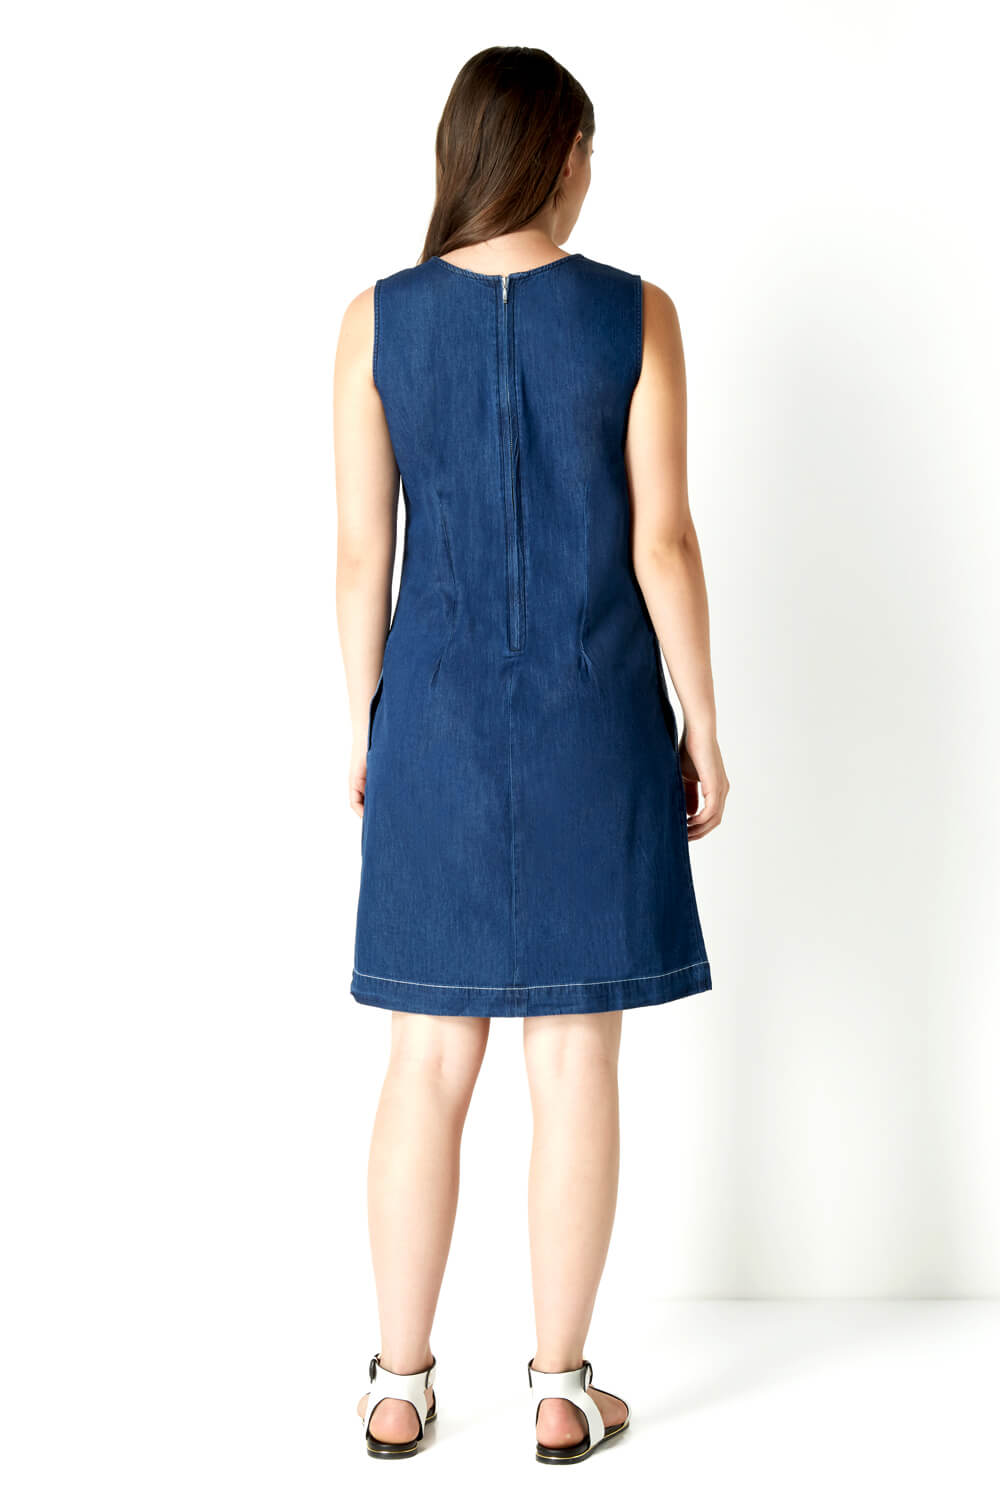 Blue Denim Shift Dress, Image 3 of 4